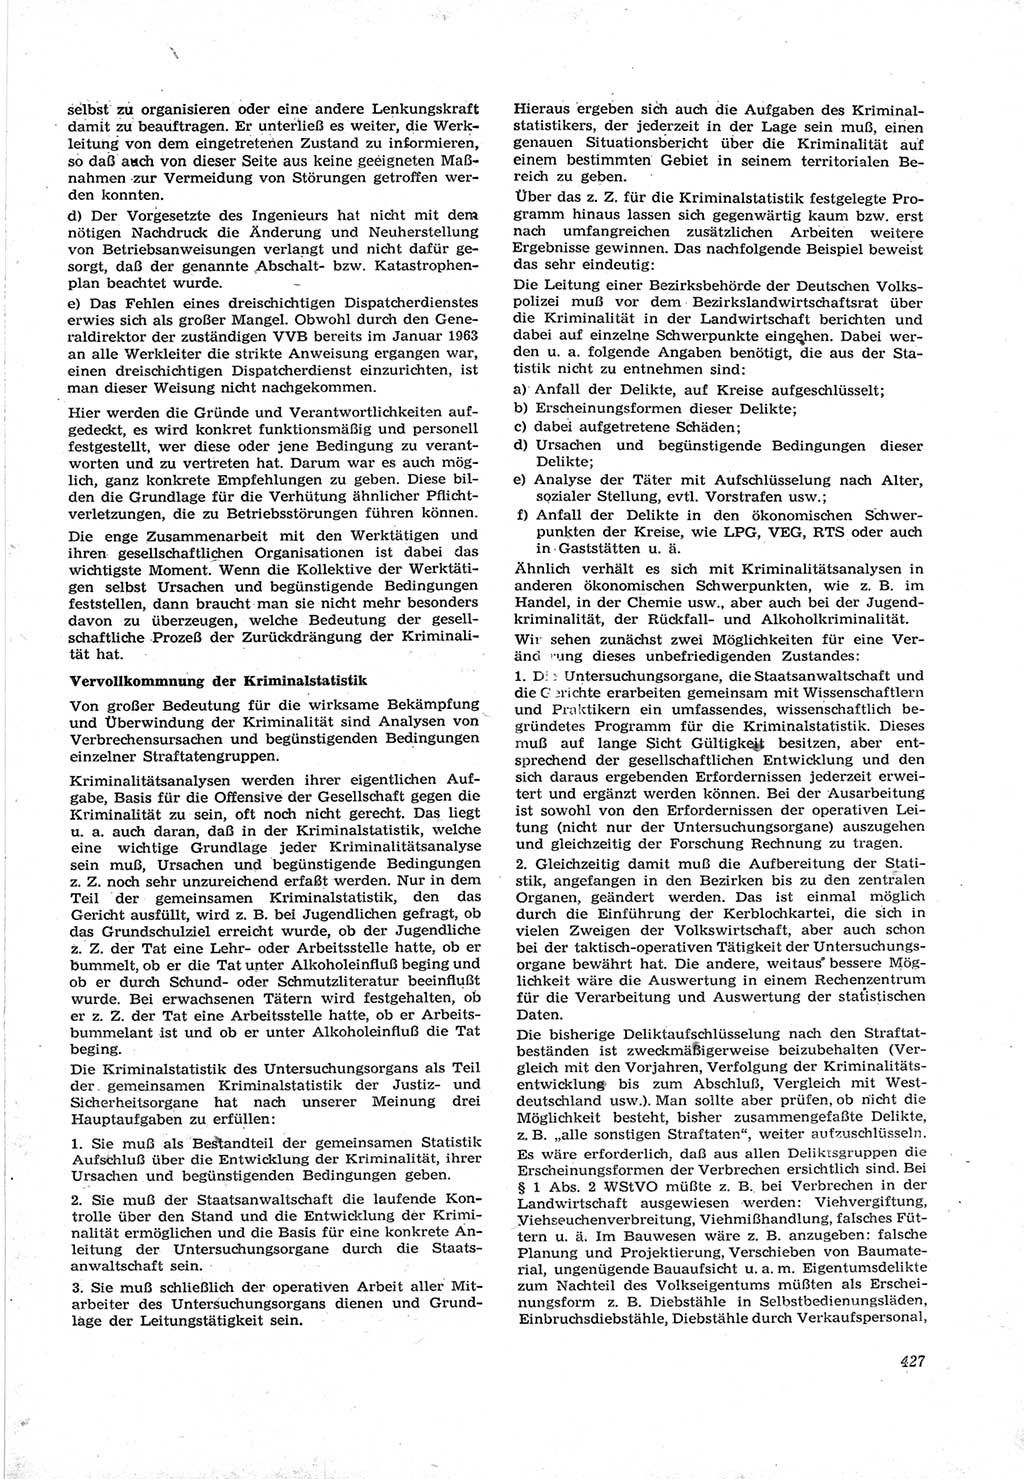 Neue Justiz (NJ), Zeitschrift für Recht und Rechtswissenschaft [Deutsche Demokratische Republik (DDR)], 17. Jahrgang 1963, Seite 427 (NJ DDR 1963, S. 427)